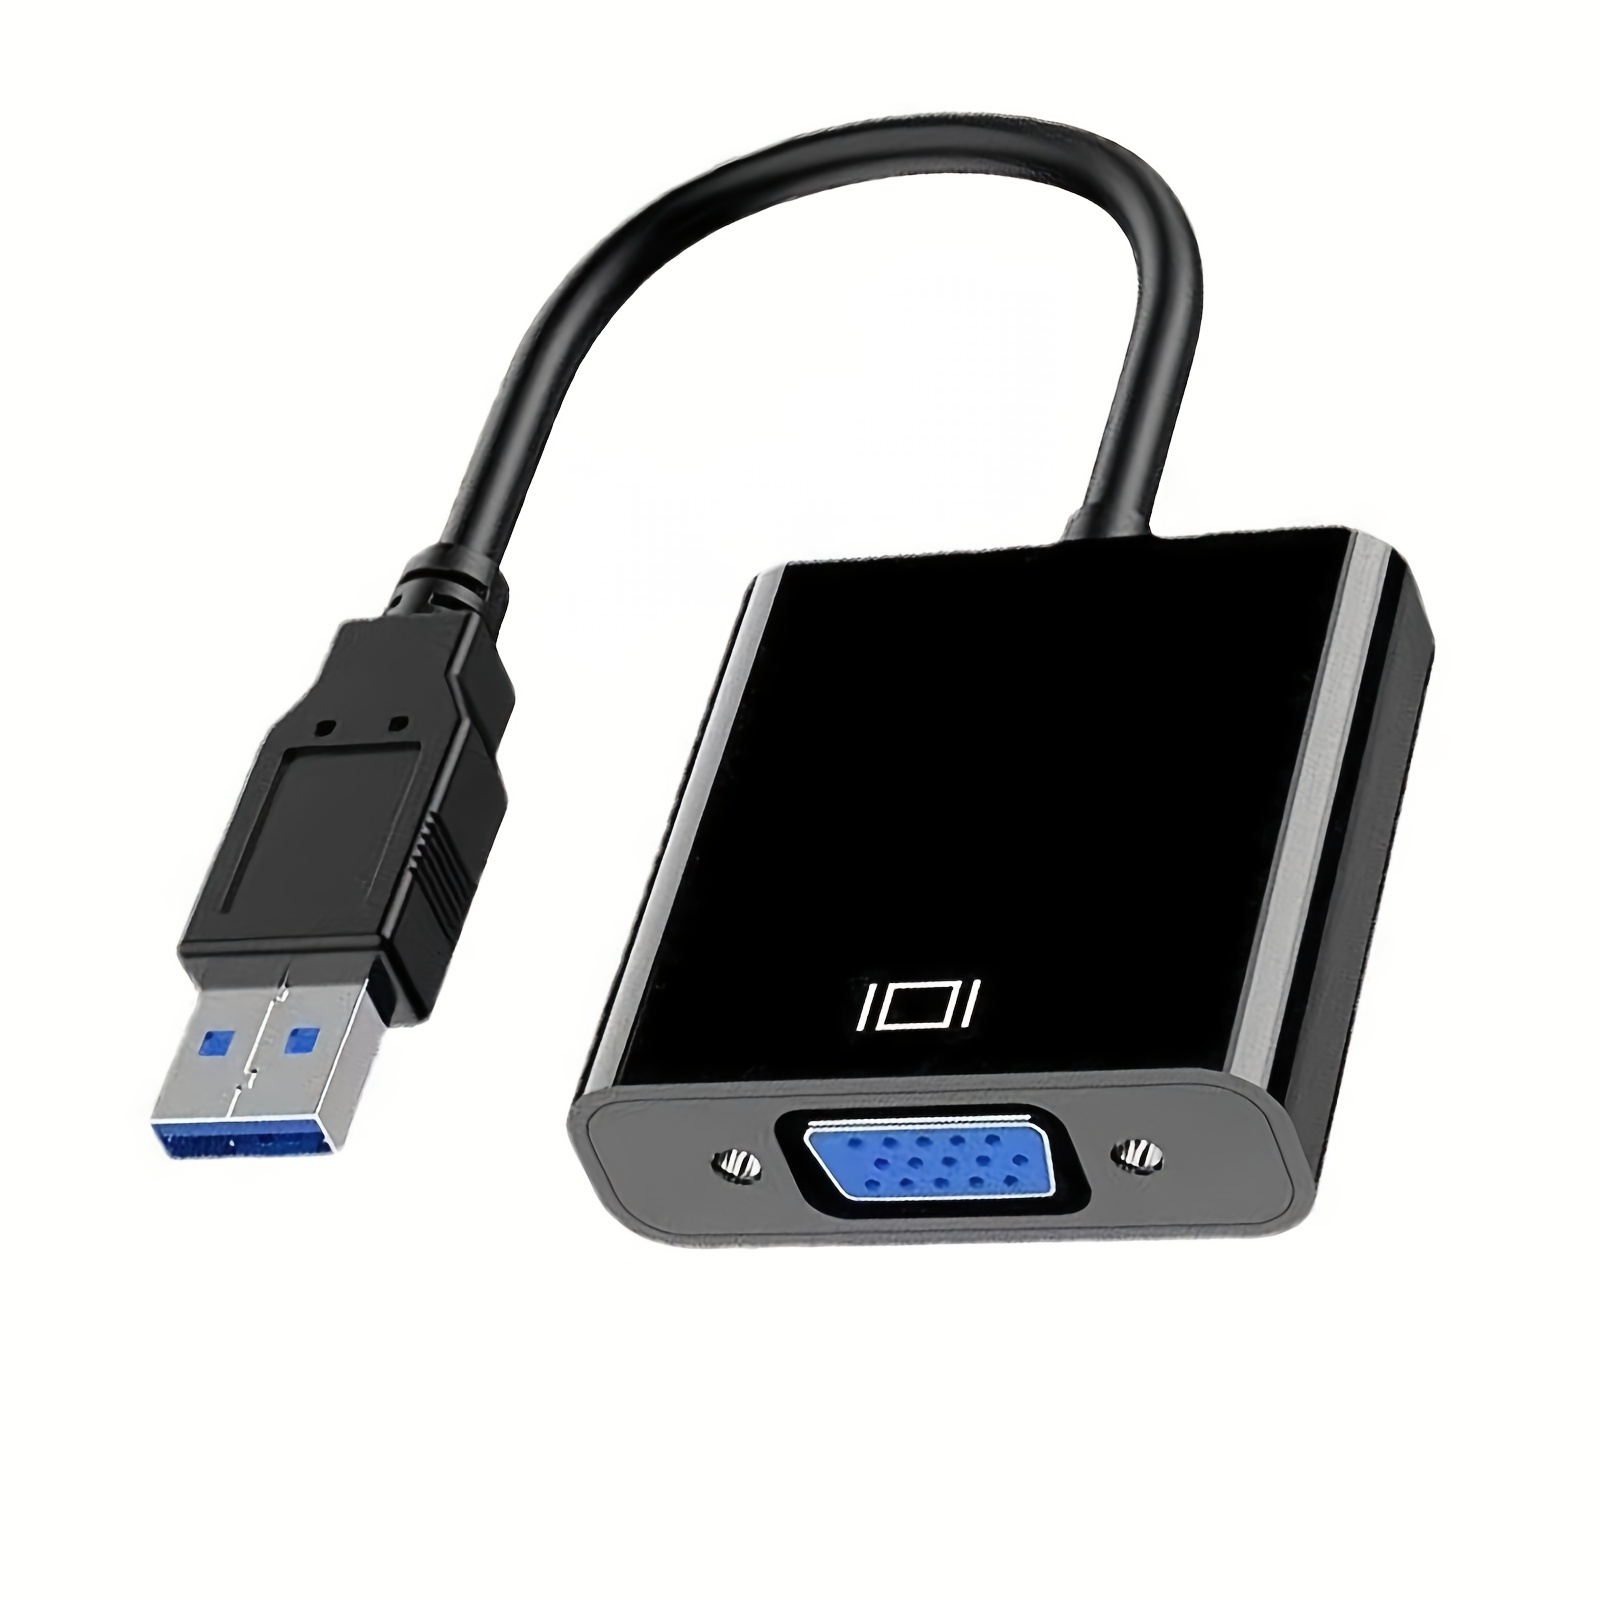  Adaptador USB a HDMI, USB3.1 USB C a HDMI hembra convertidor de  puerto hembra, convertidor de cable gráfico de video 1080P para teléfonos  móviles, HDTV, monitor, proyector : Electrónica